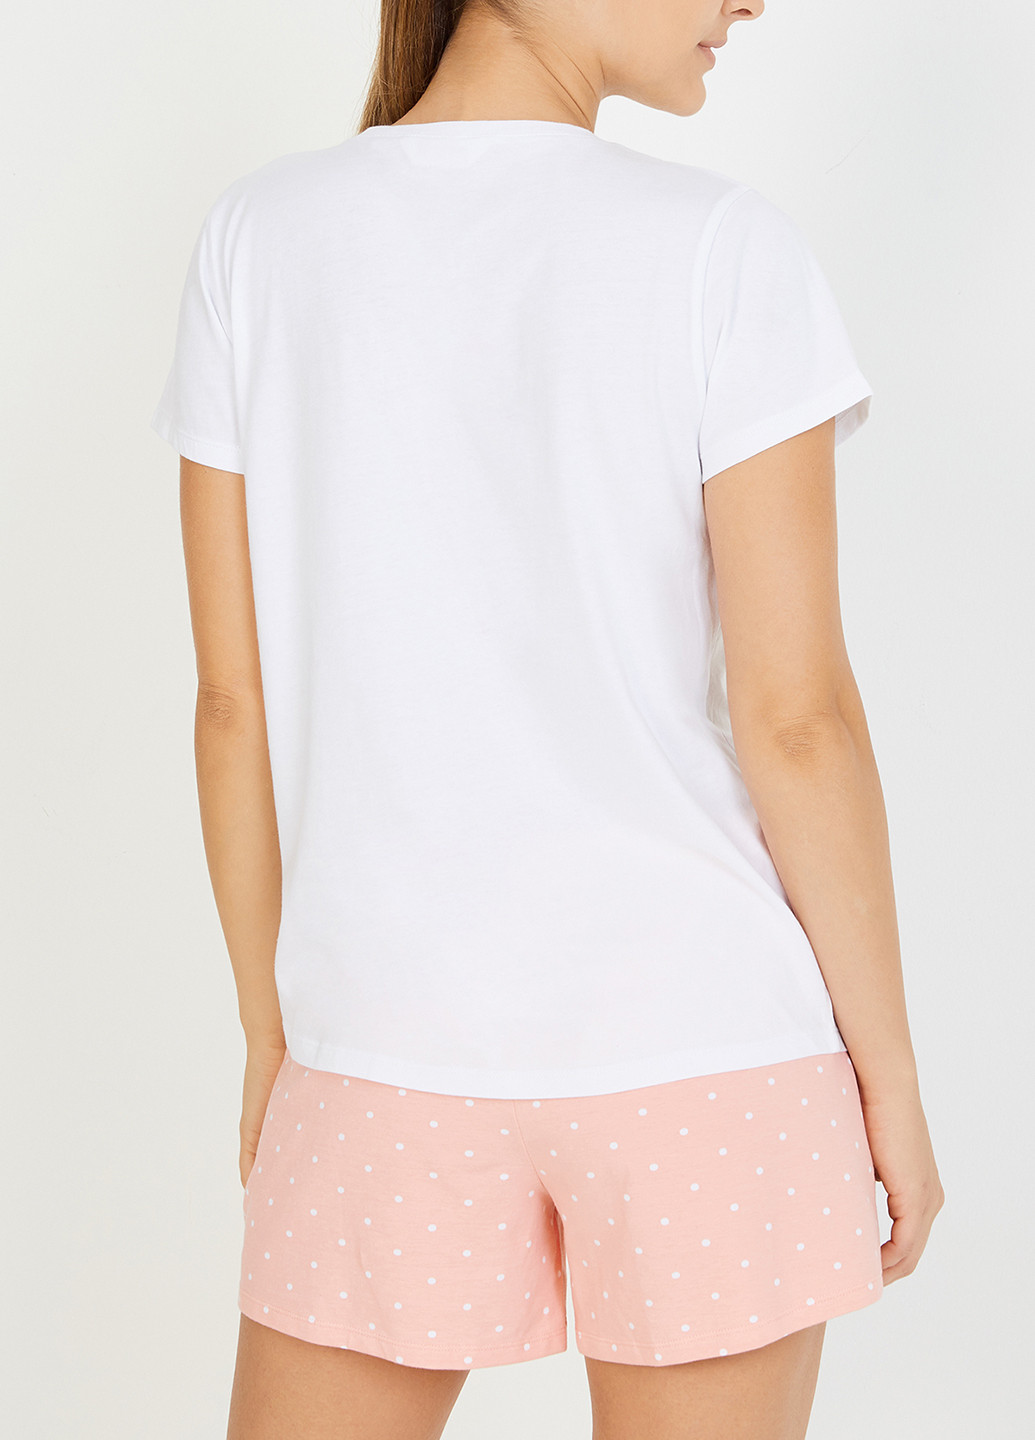 Персикова всесезон піжама (футболка, шорти) футболка + шорти Penti